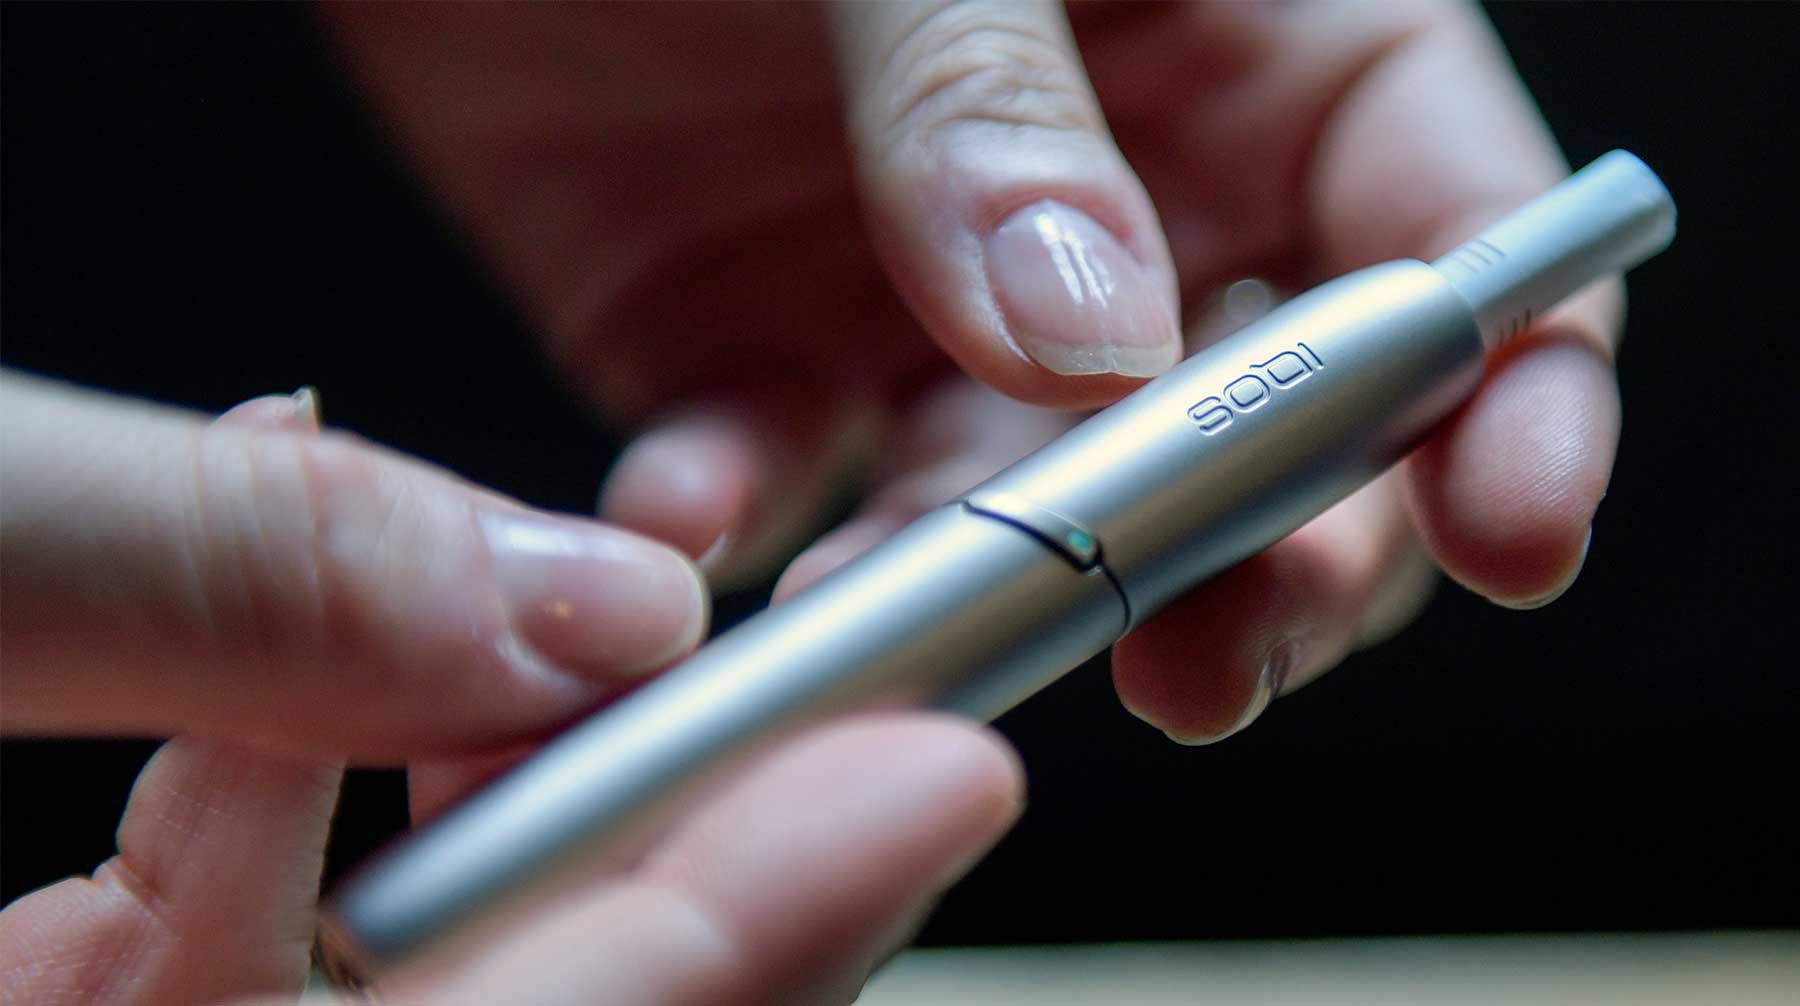 Dailystorm - Минздрав связал электронные сигареты с возможной «эпидемией» никотиновой зависимости